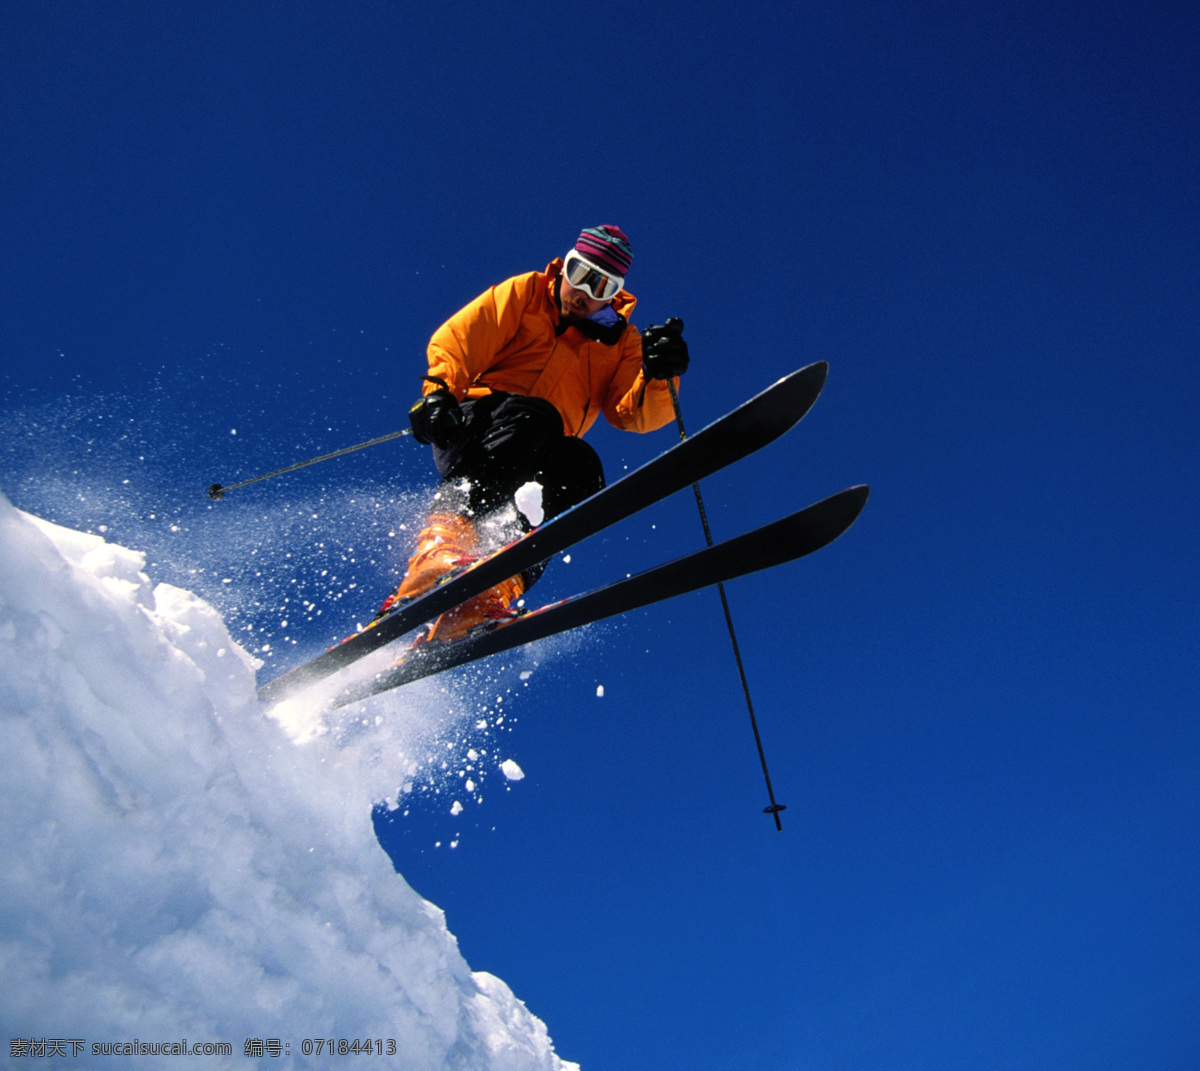 滑雪 雪上运动 雪橇 运动 太阳镜 花纹 蓝天白云 太阳 滑雪海报 旅游 运动员 滑雪板 摄影图库 文化艺术 体育运动